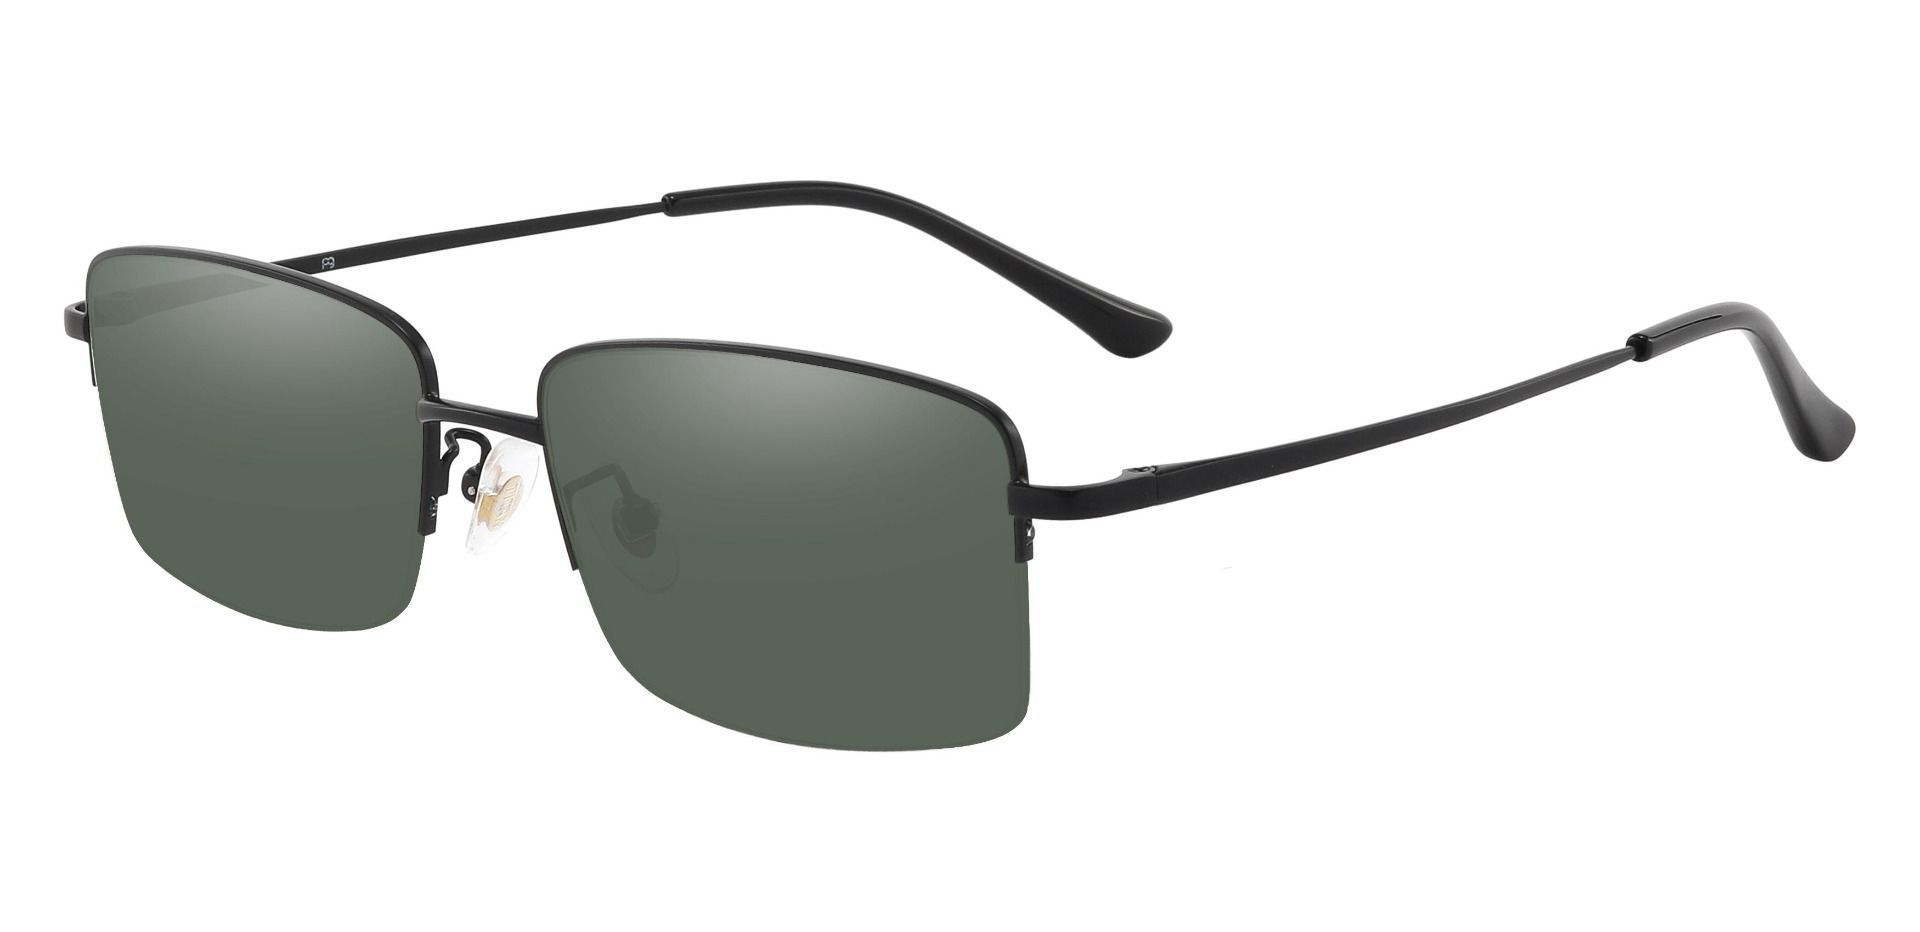 Bellmont Rectangle Prescription Sunglasses - Black Frame With Green Lenses